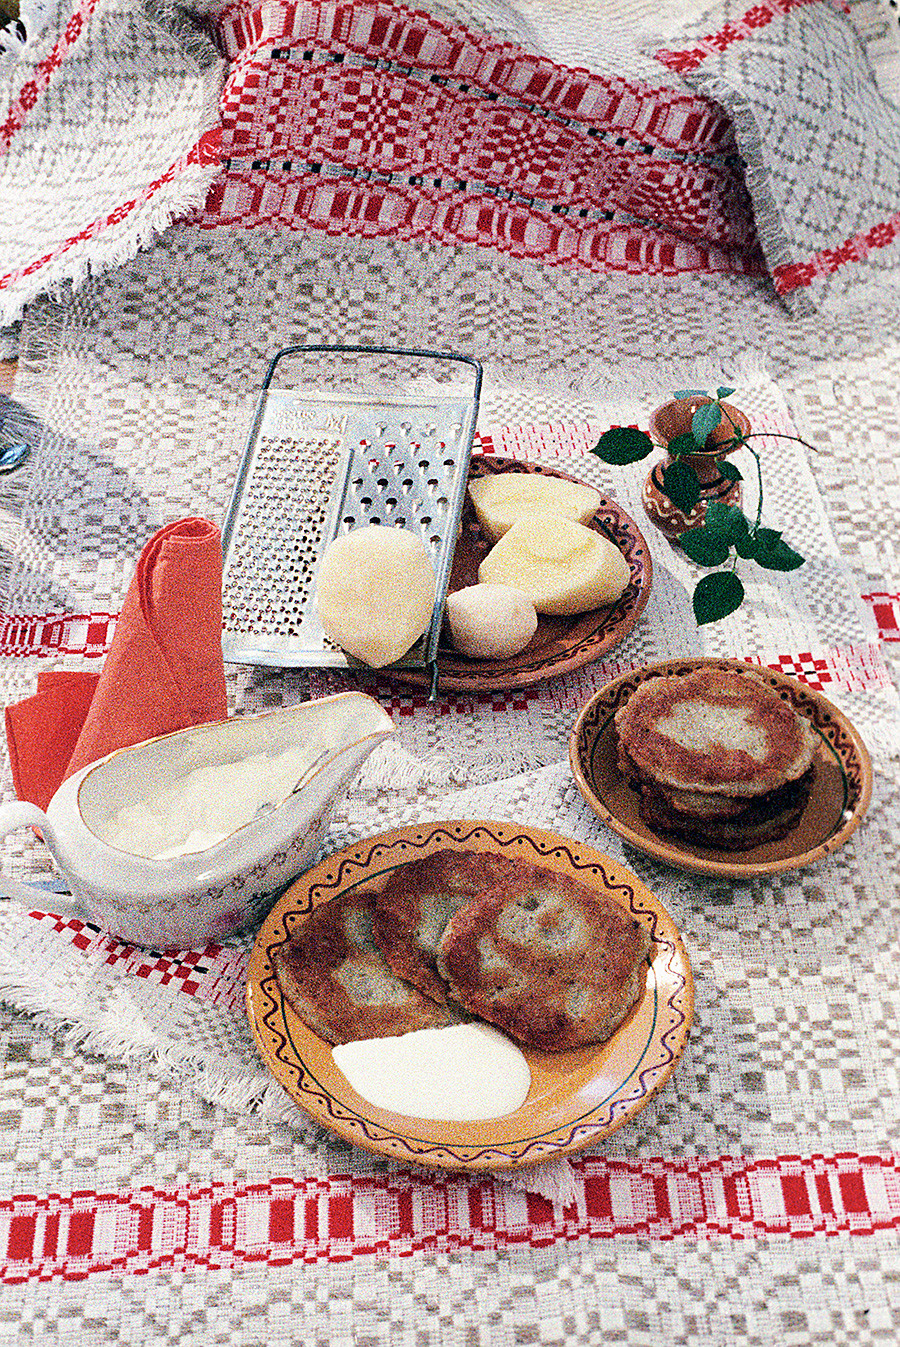 Драники, палачинке од кромпира, 1987.

